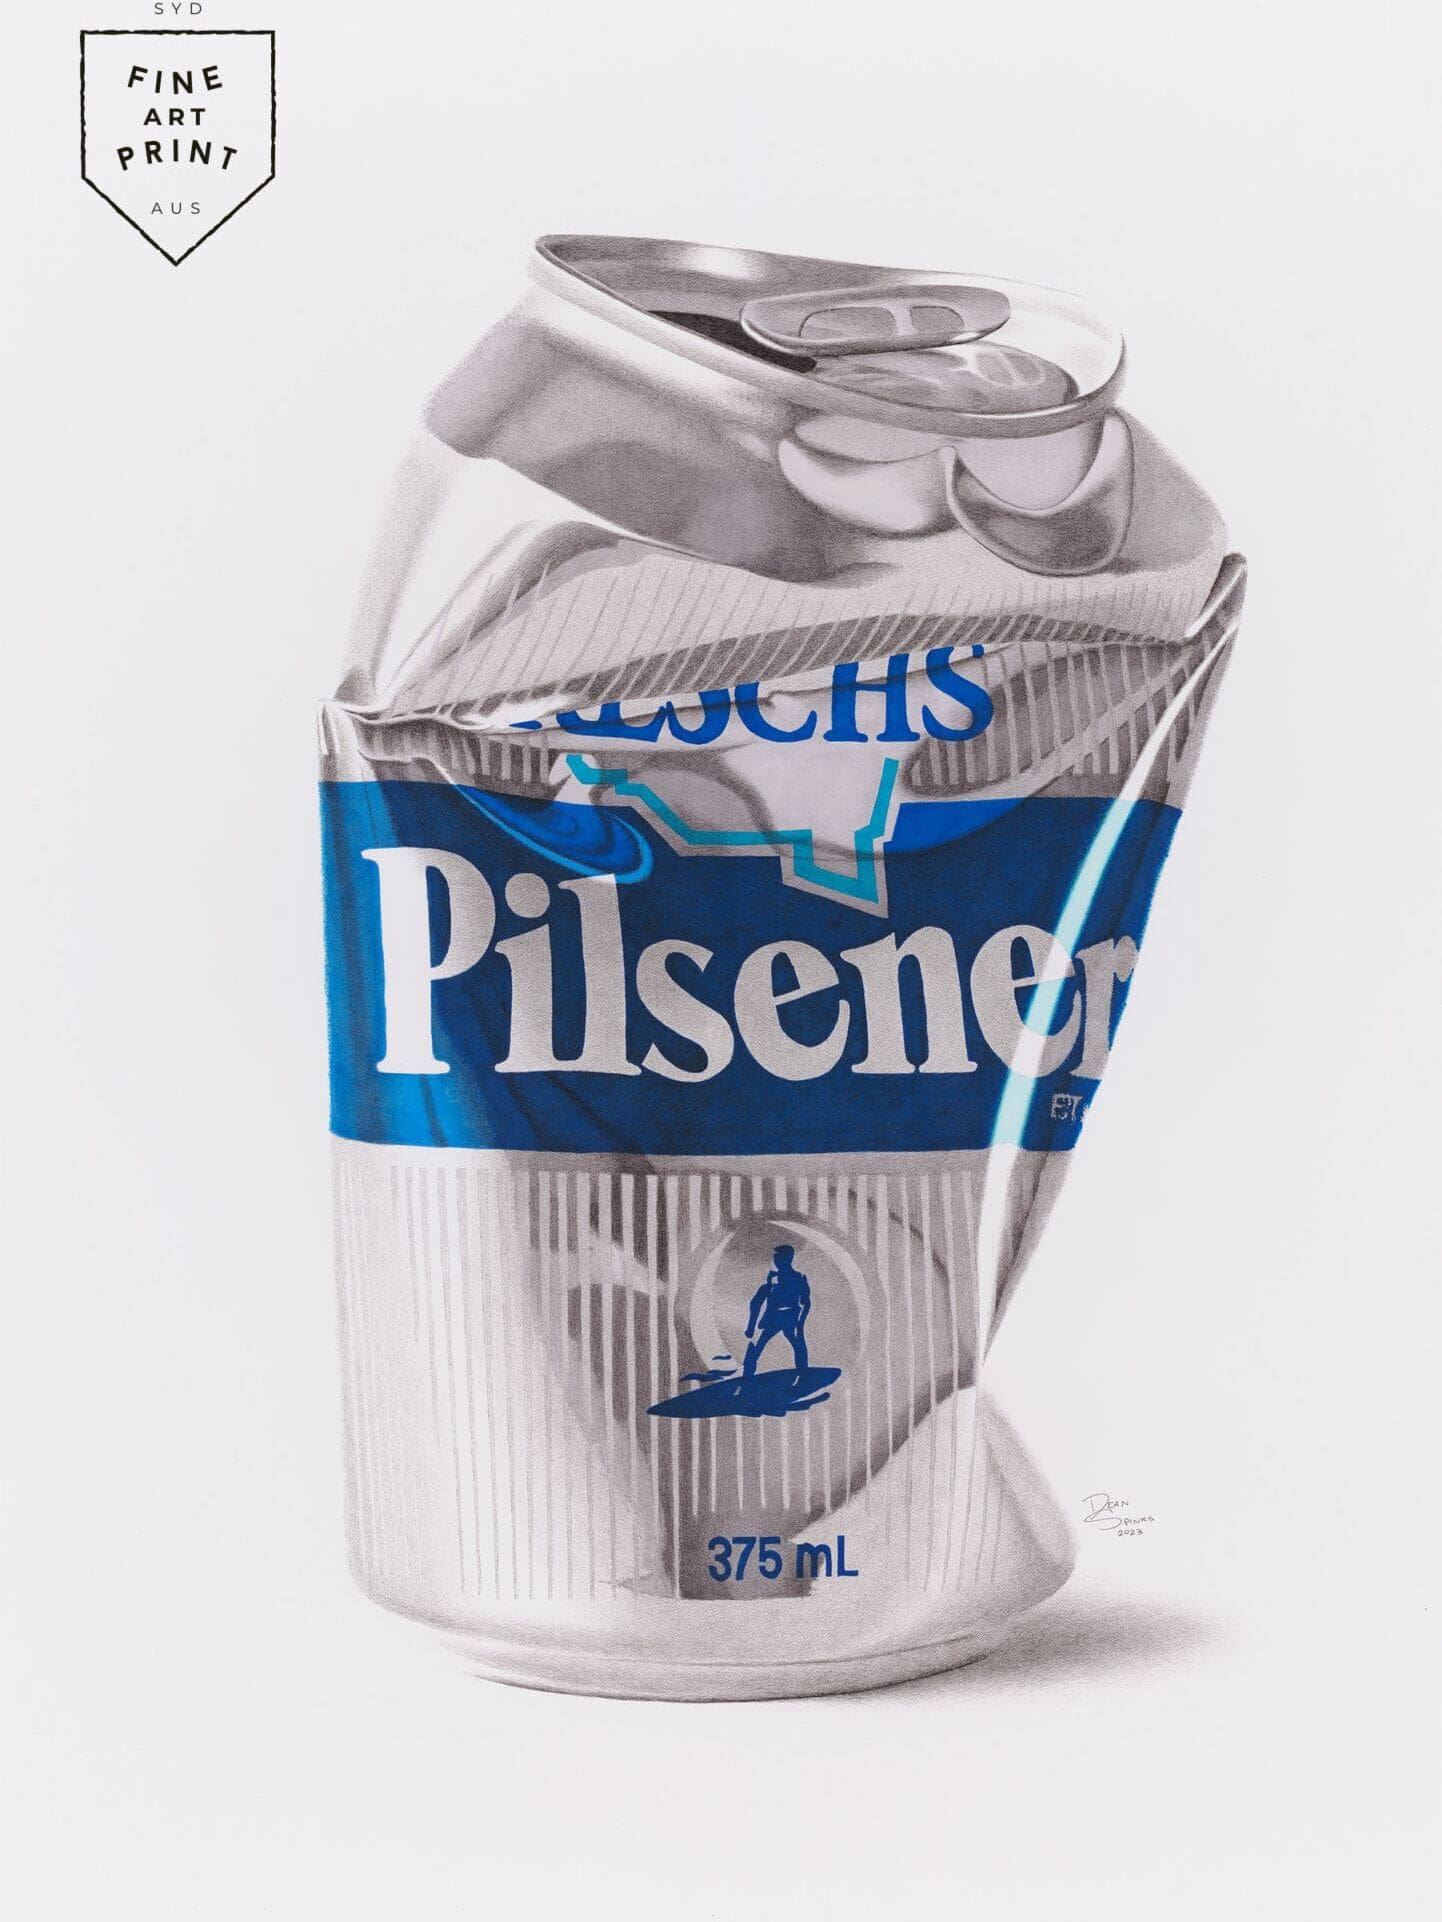 Fine art print of Reschs Pilsener beer can artwork